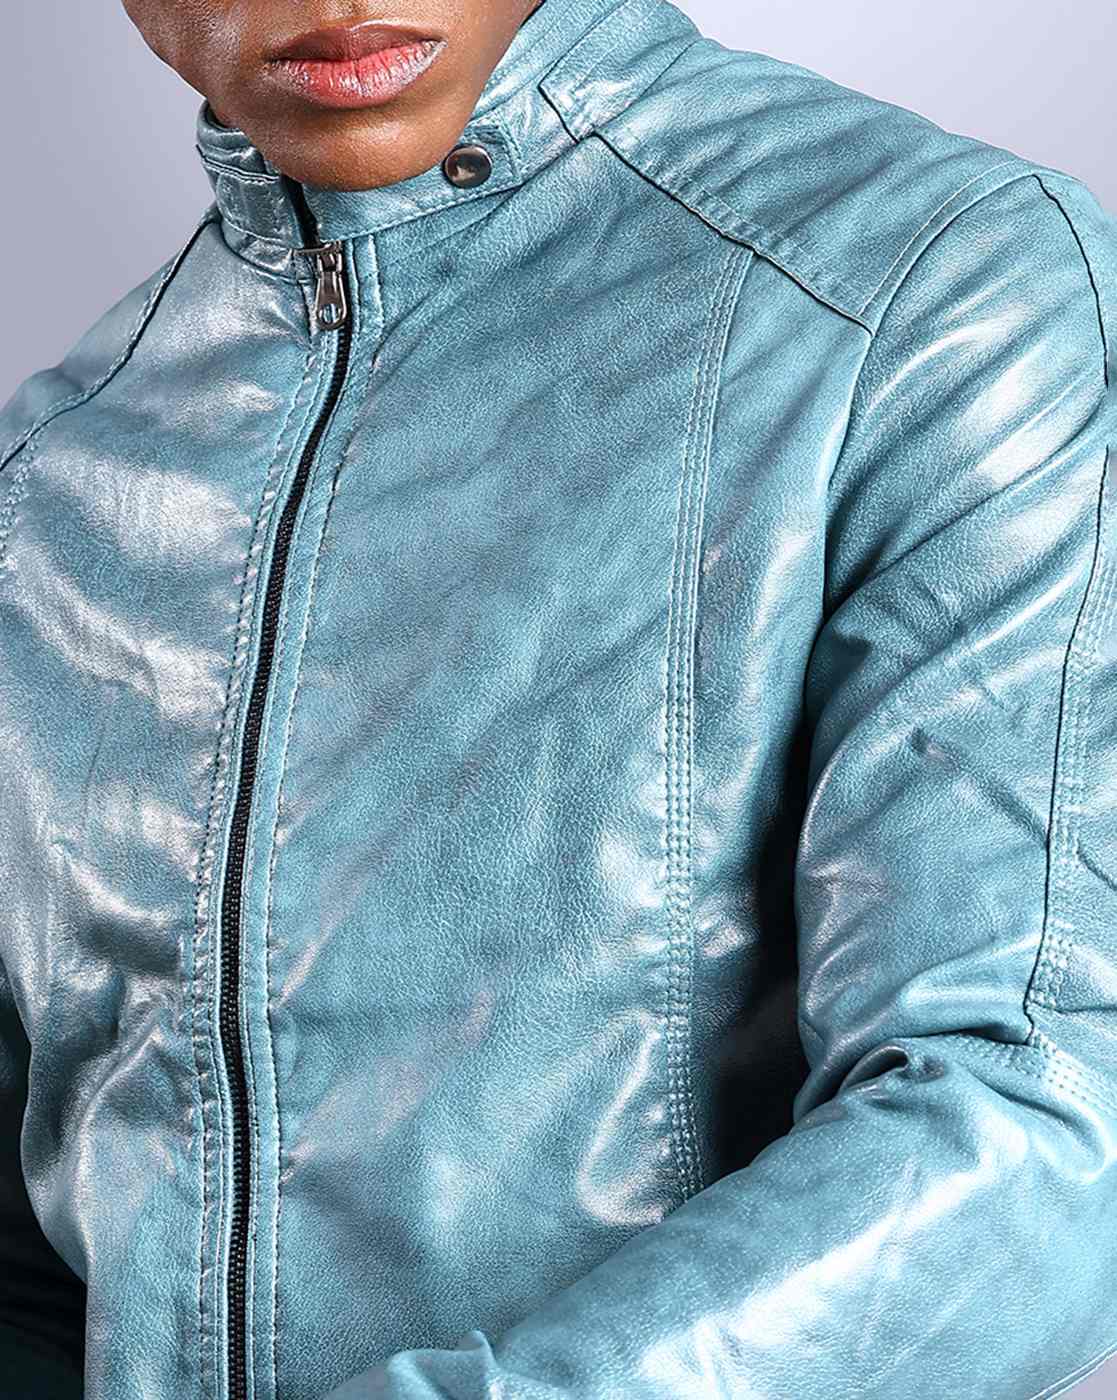 Navy Blue Baseball Leather Jacket | HipHopCloset.com